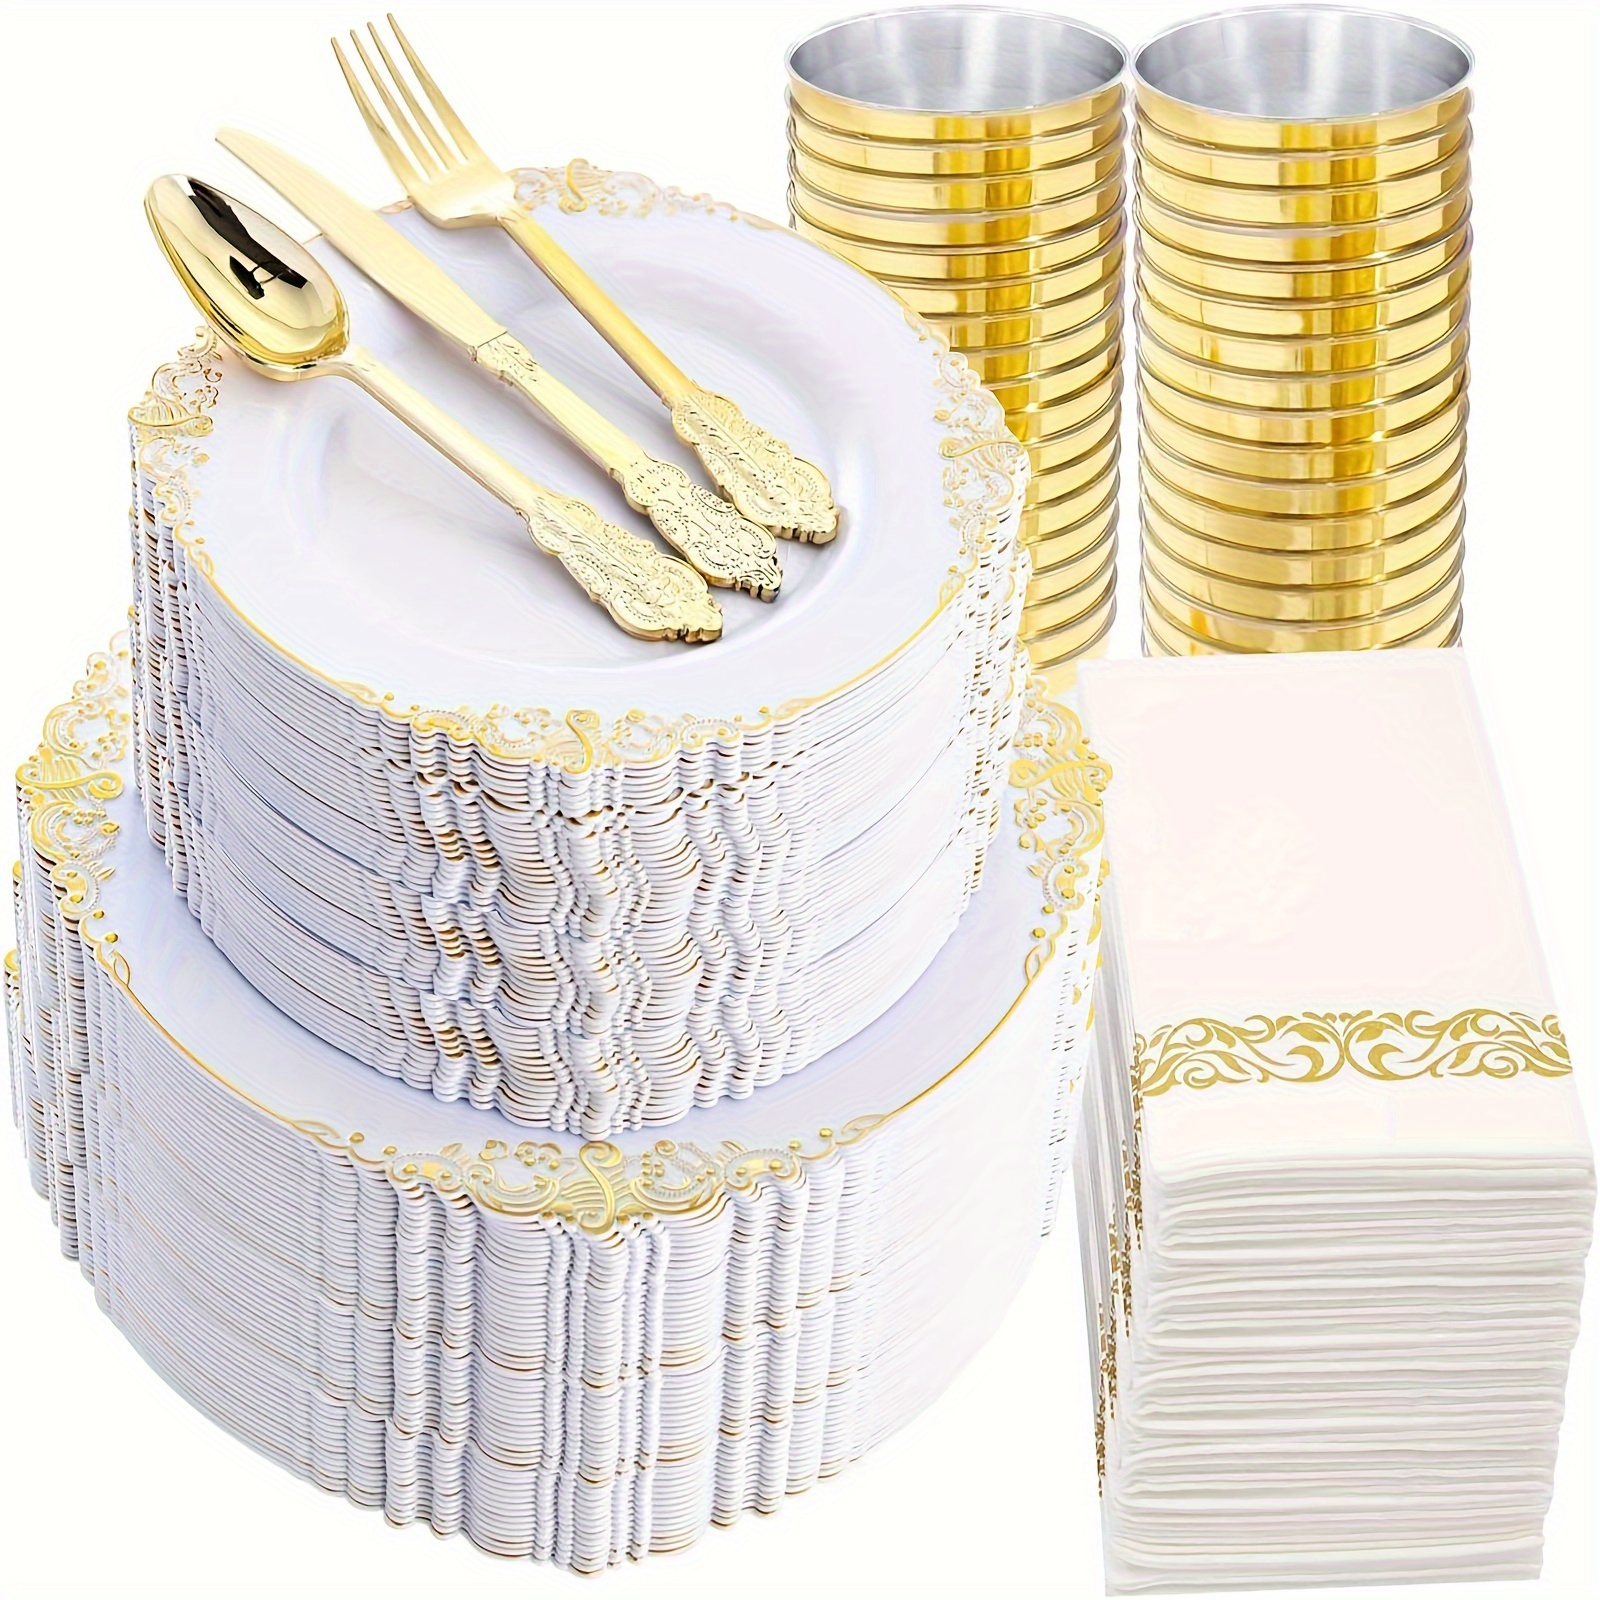  Platos de plástico de lujo de 125 piezas desechables, color  blanco, rosa y dorado con cubiertos, vajilla elegante para bodas, fiestas  de vacaciones, China, juego de 25 platos de cena +